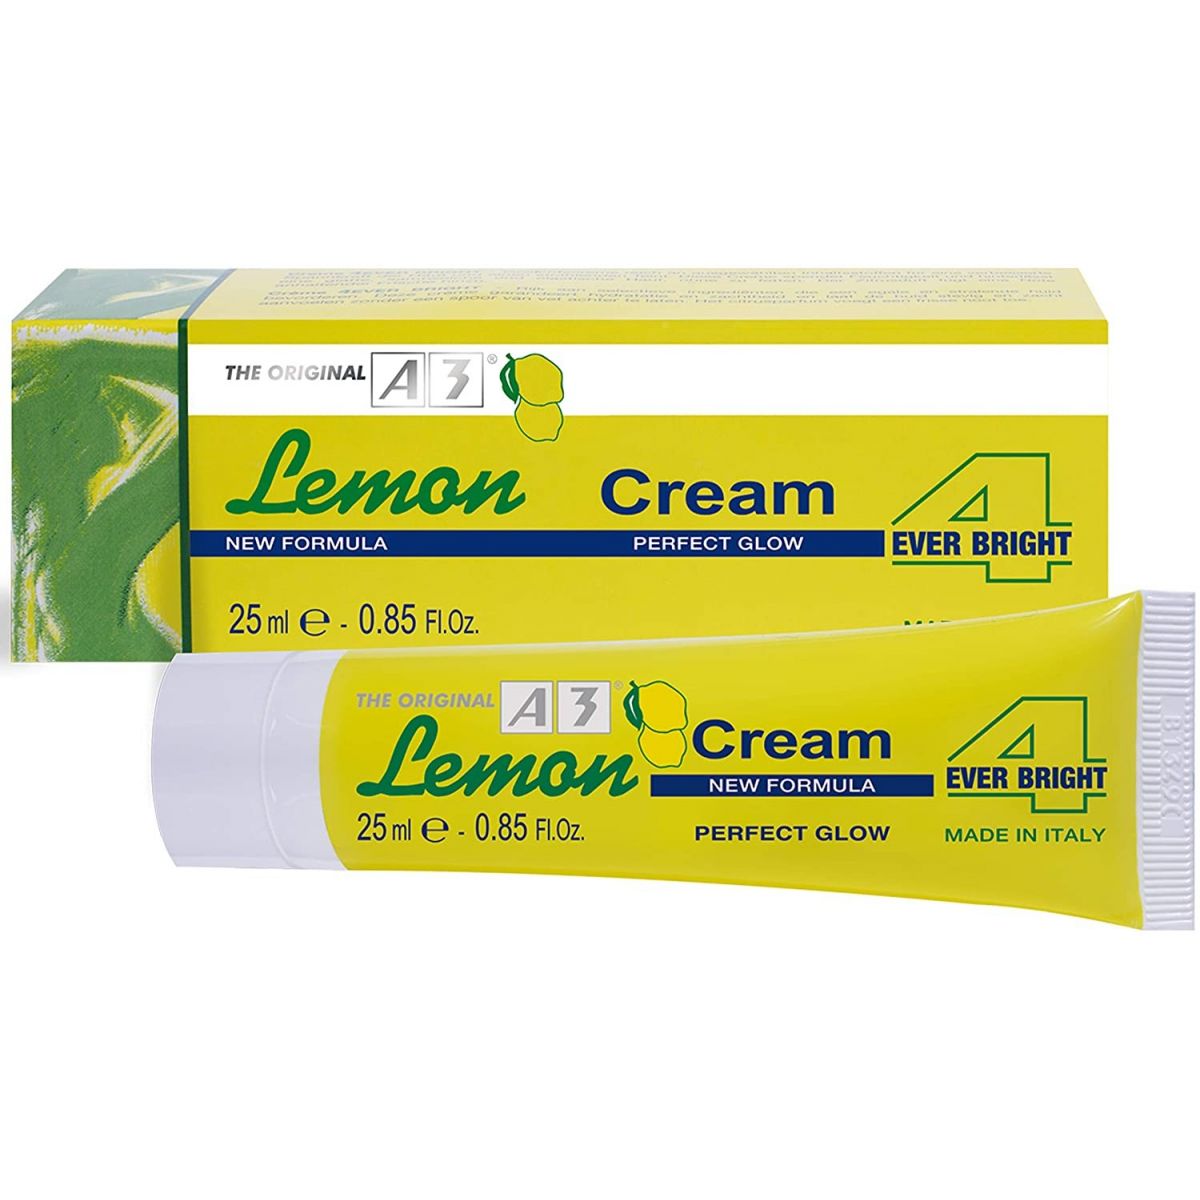 A3 Lemon Cream 4 Ever Bright 25 ml